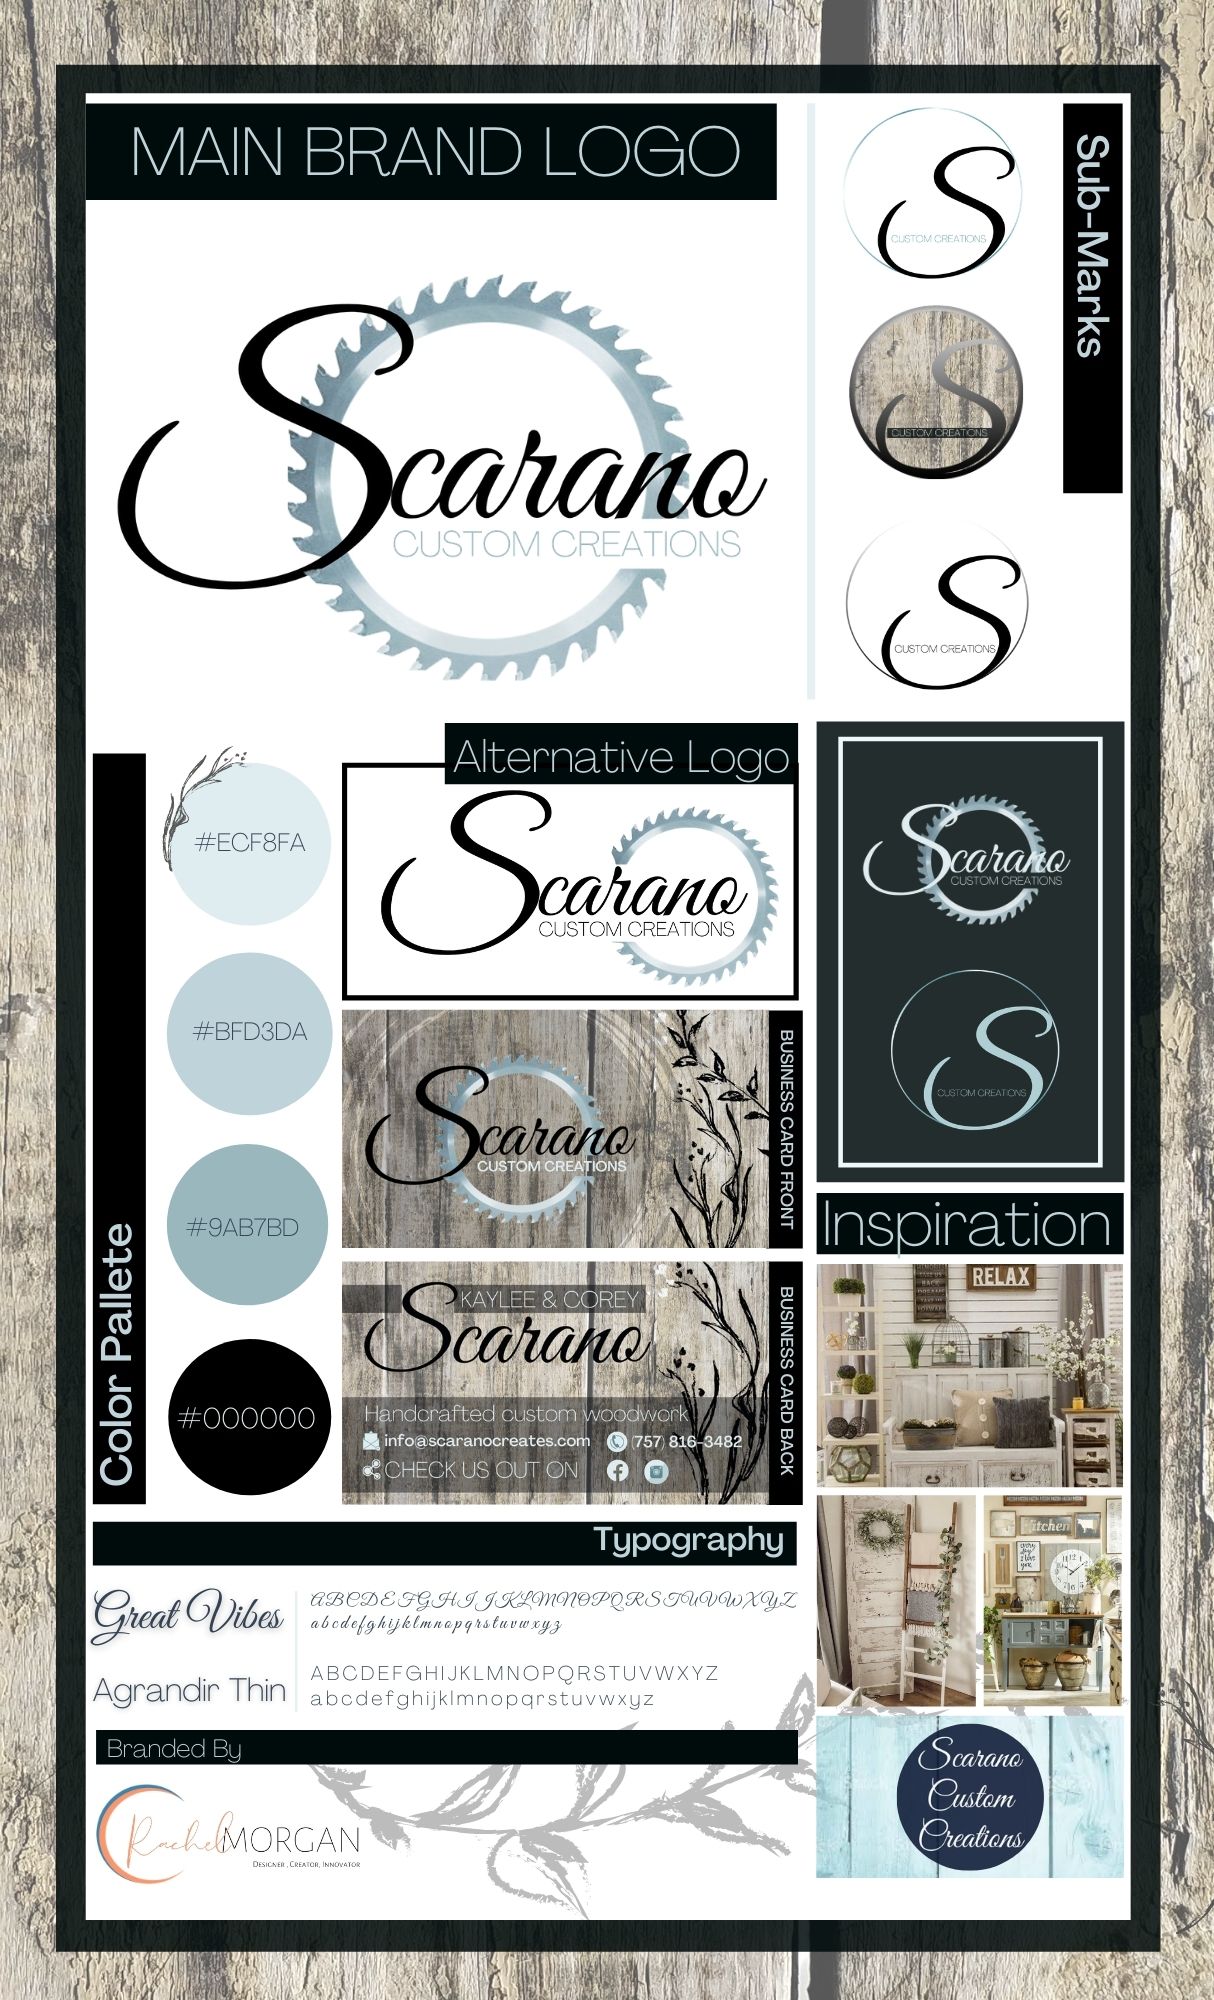 Scarano Brand Guide